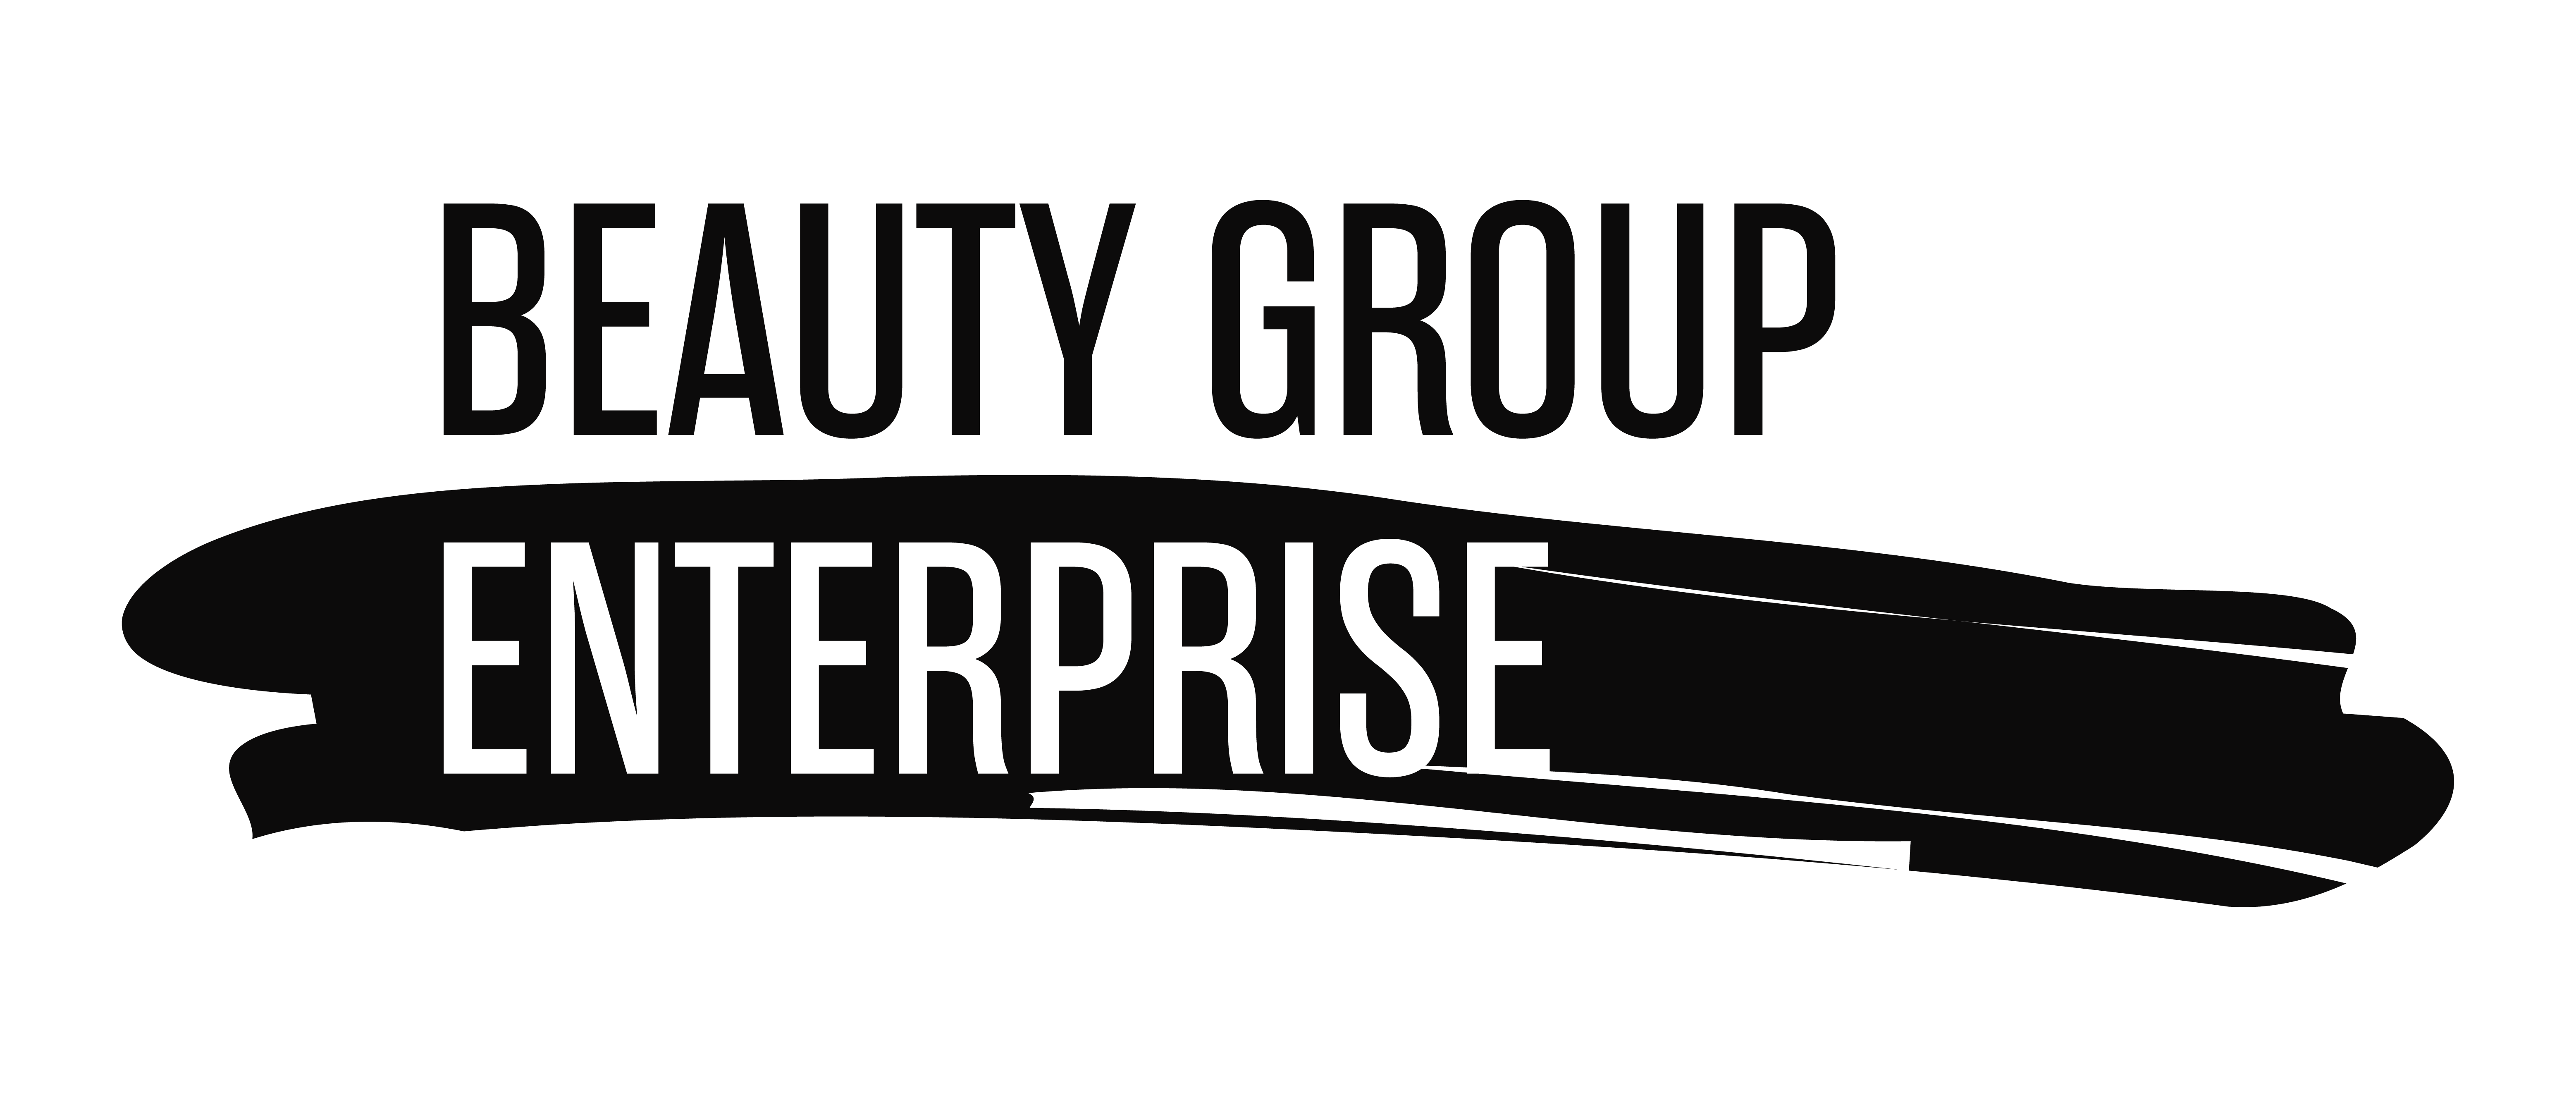 Beauty Group Enterprise